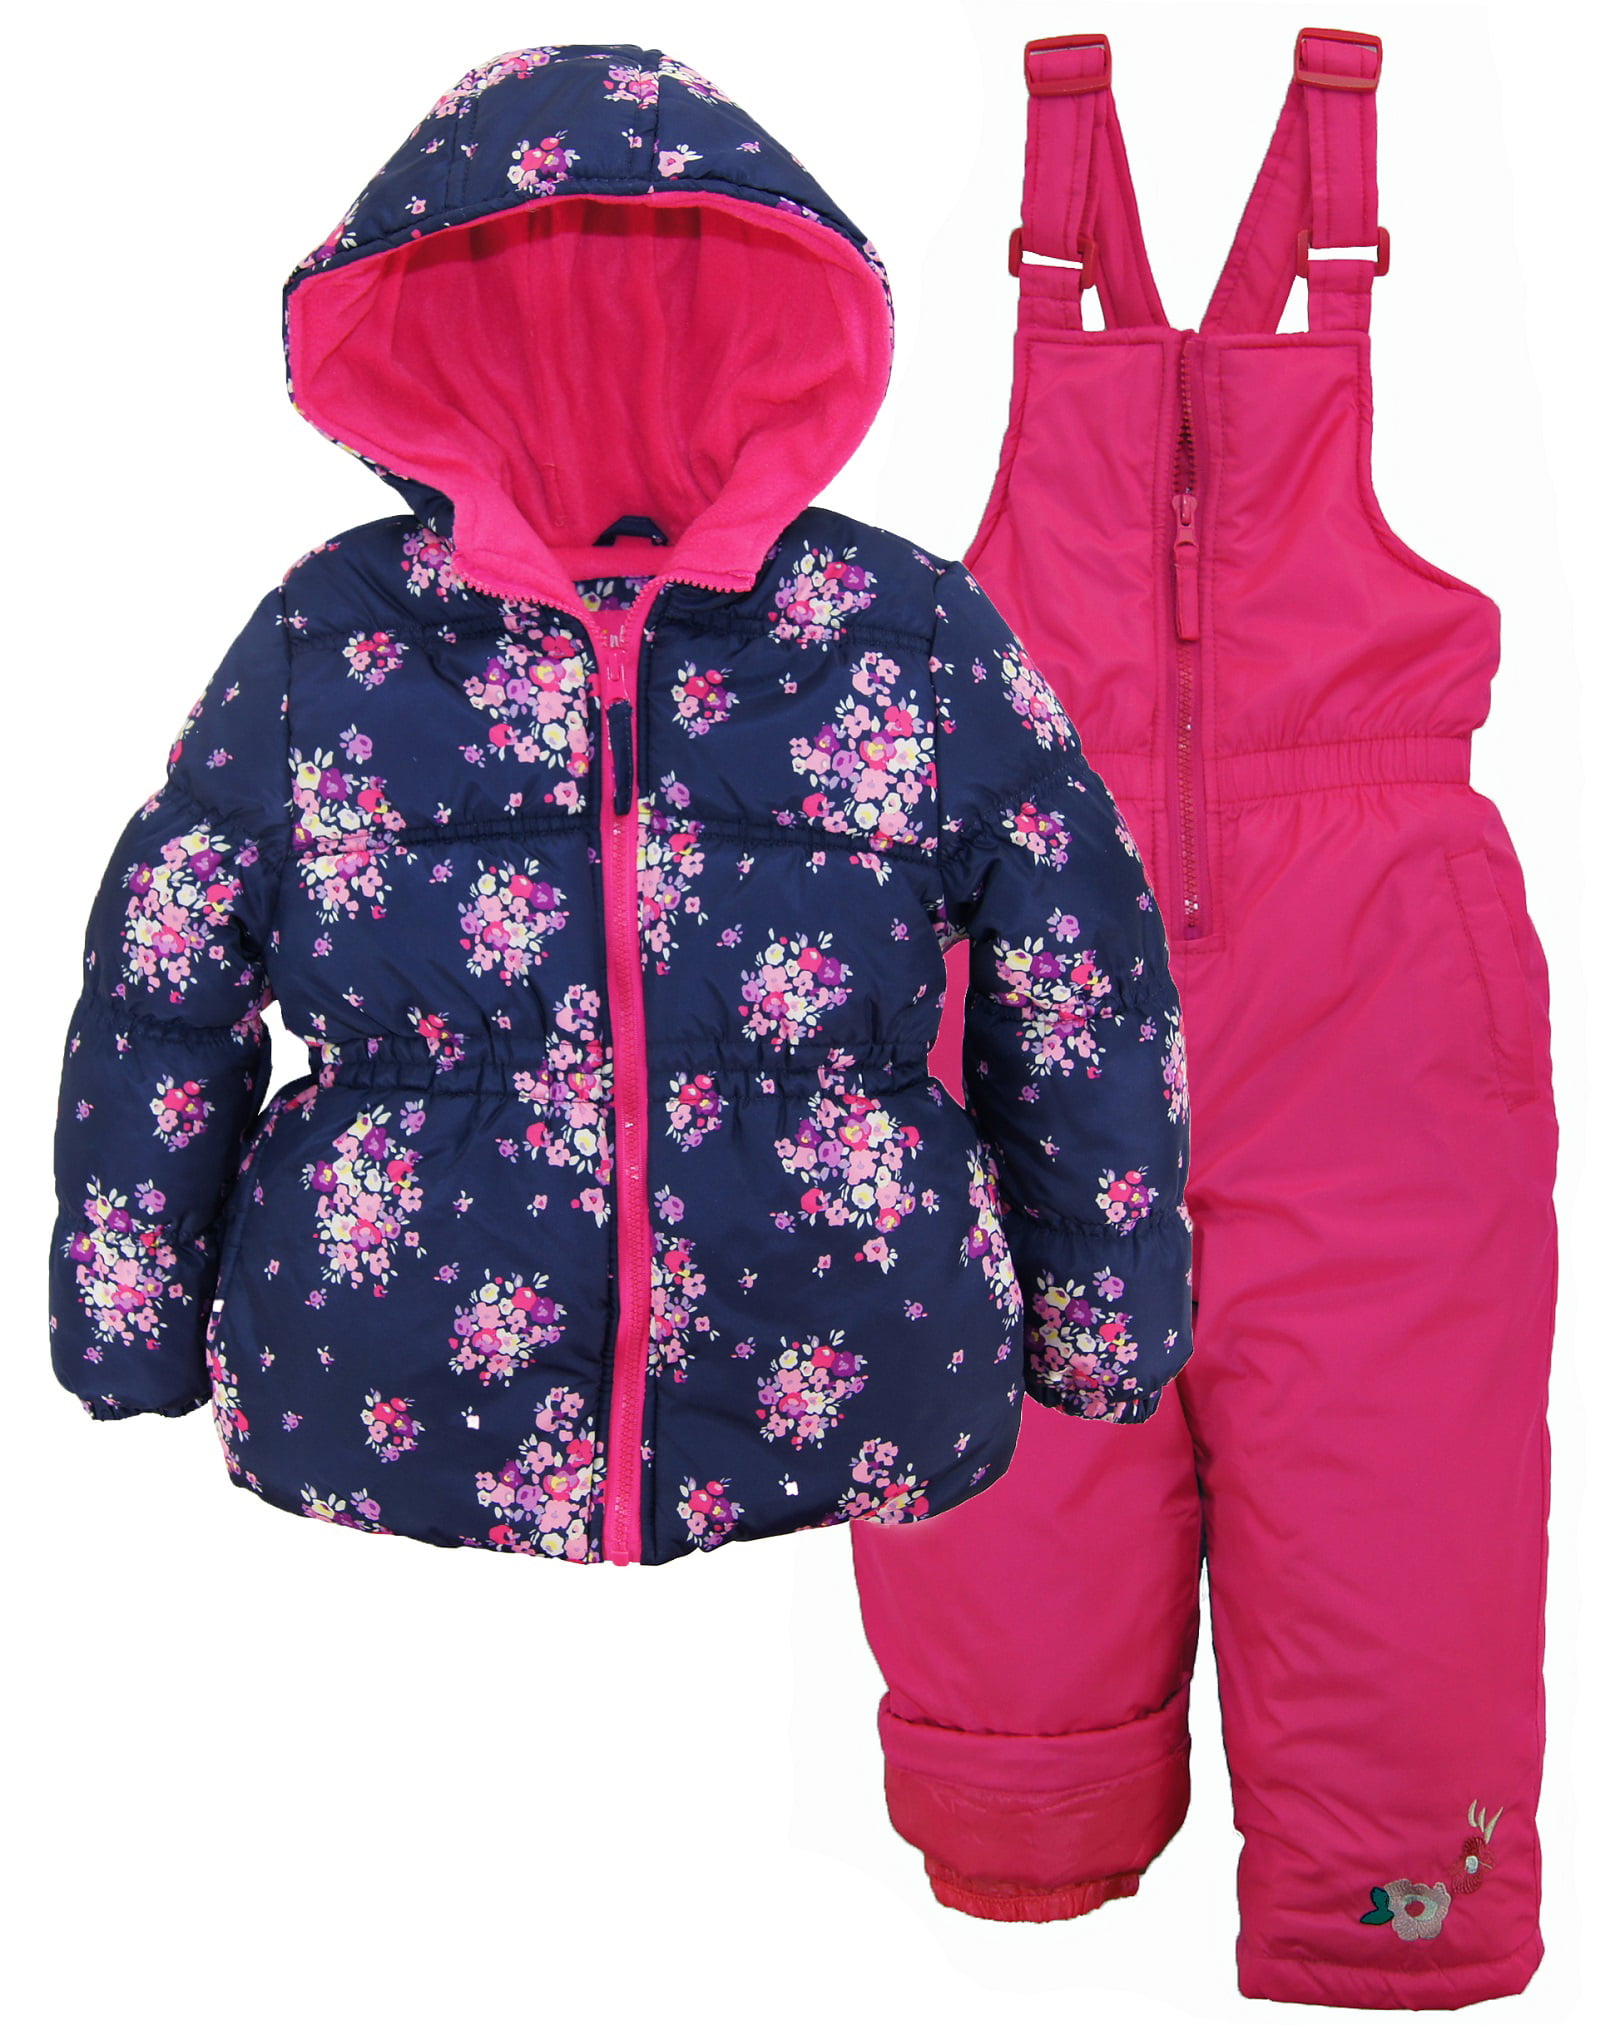 Pink Platinum Girls Snowsuit Floral Printed Winter Puffer Jacket Ski ...